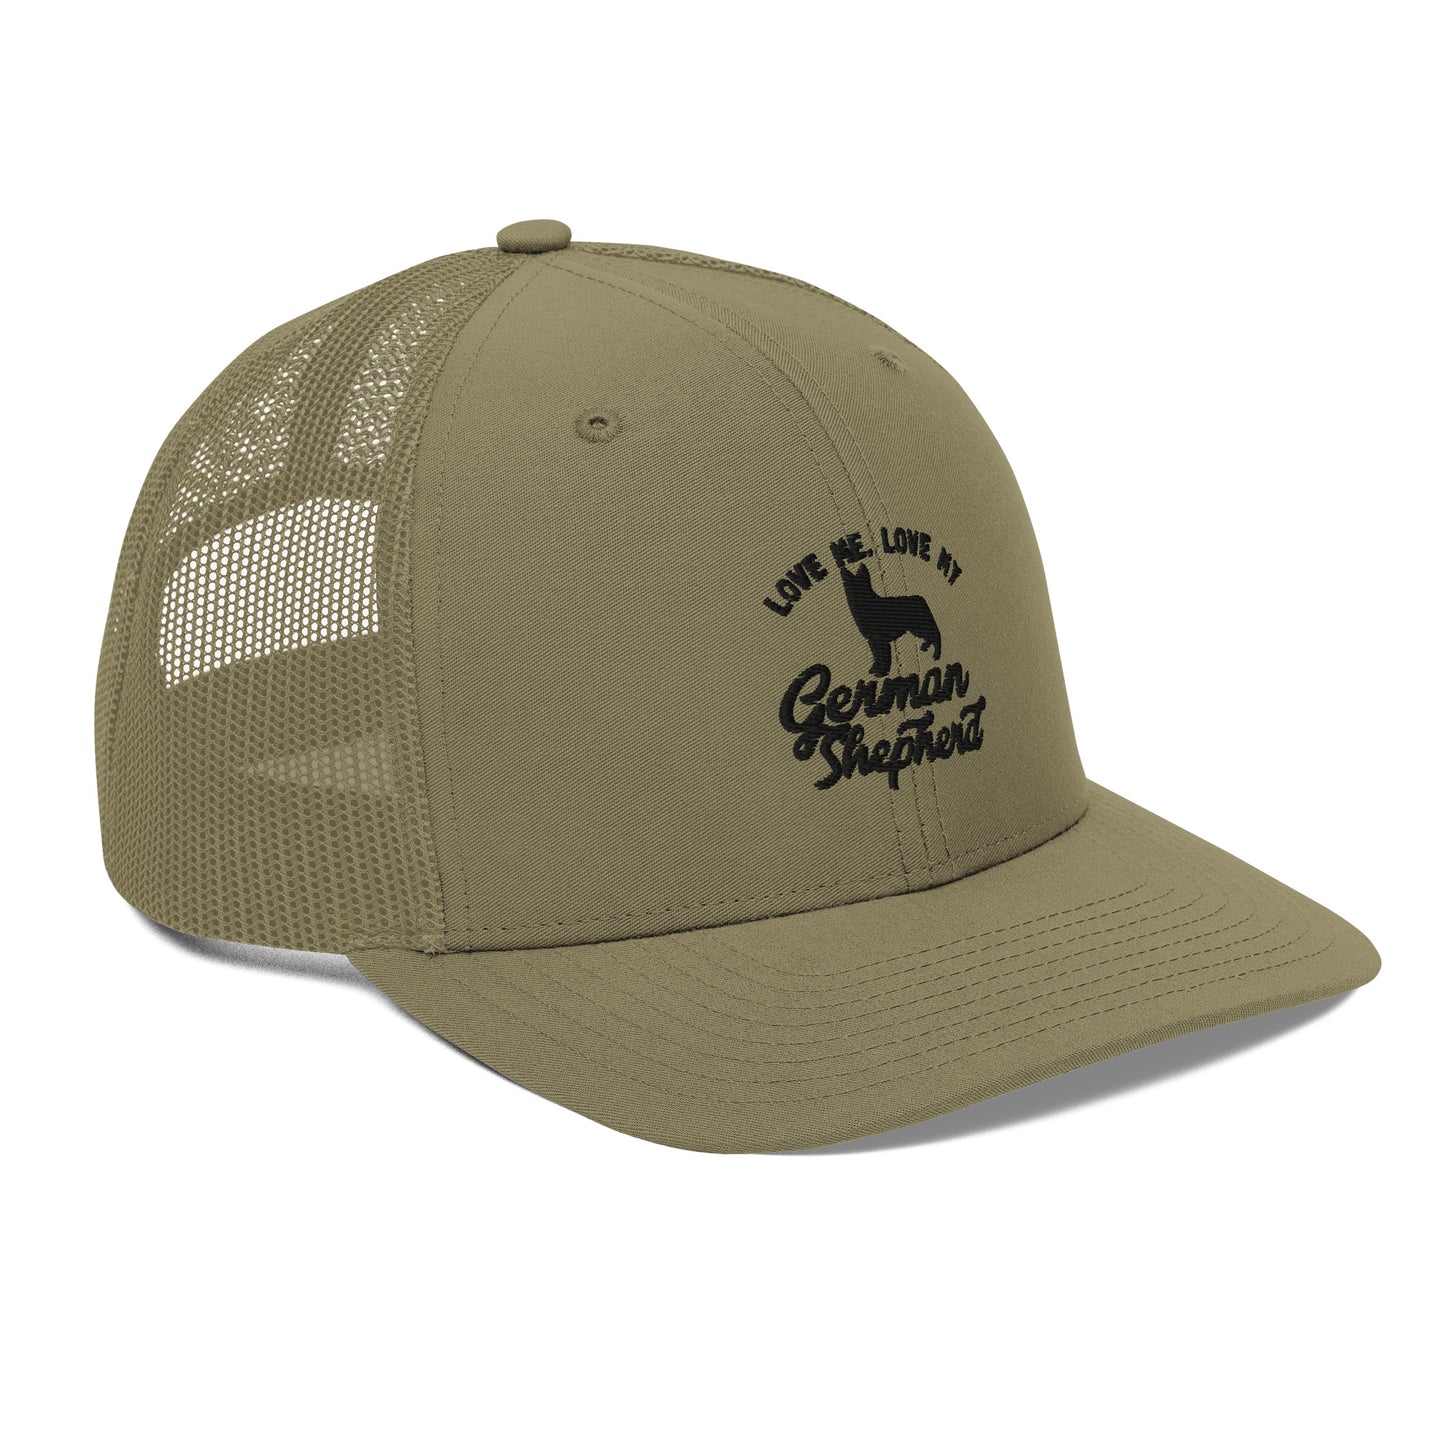 German Shepherd Hat / Trucker Cap